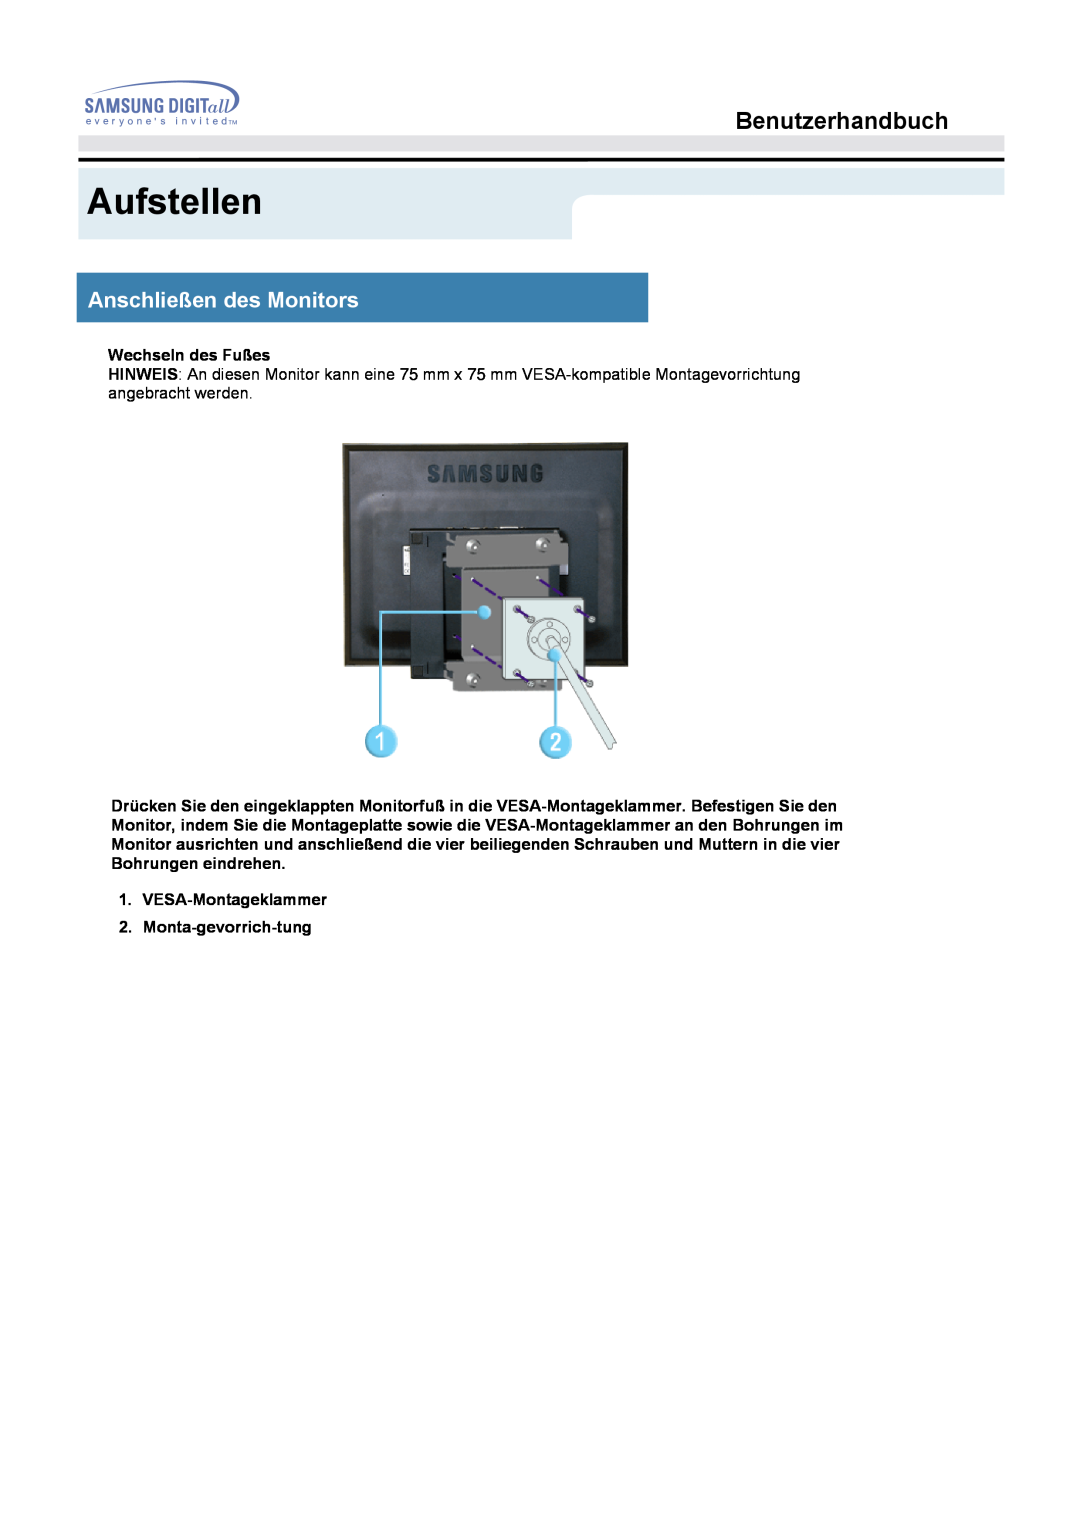 Samsung MO17ESZS/EDC, MO17ESZSZ/EDC manual Aufstellen, Benutzerhandbuch, Anschließen des Monitors, Wechseln des Fußes 